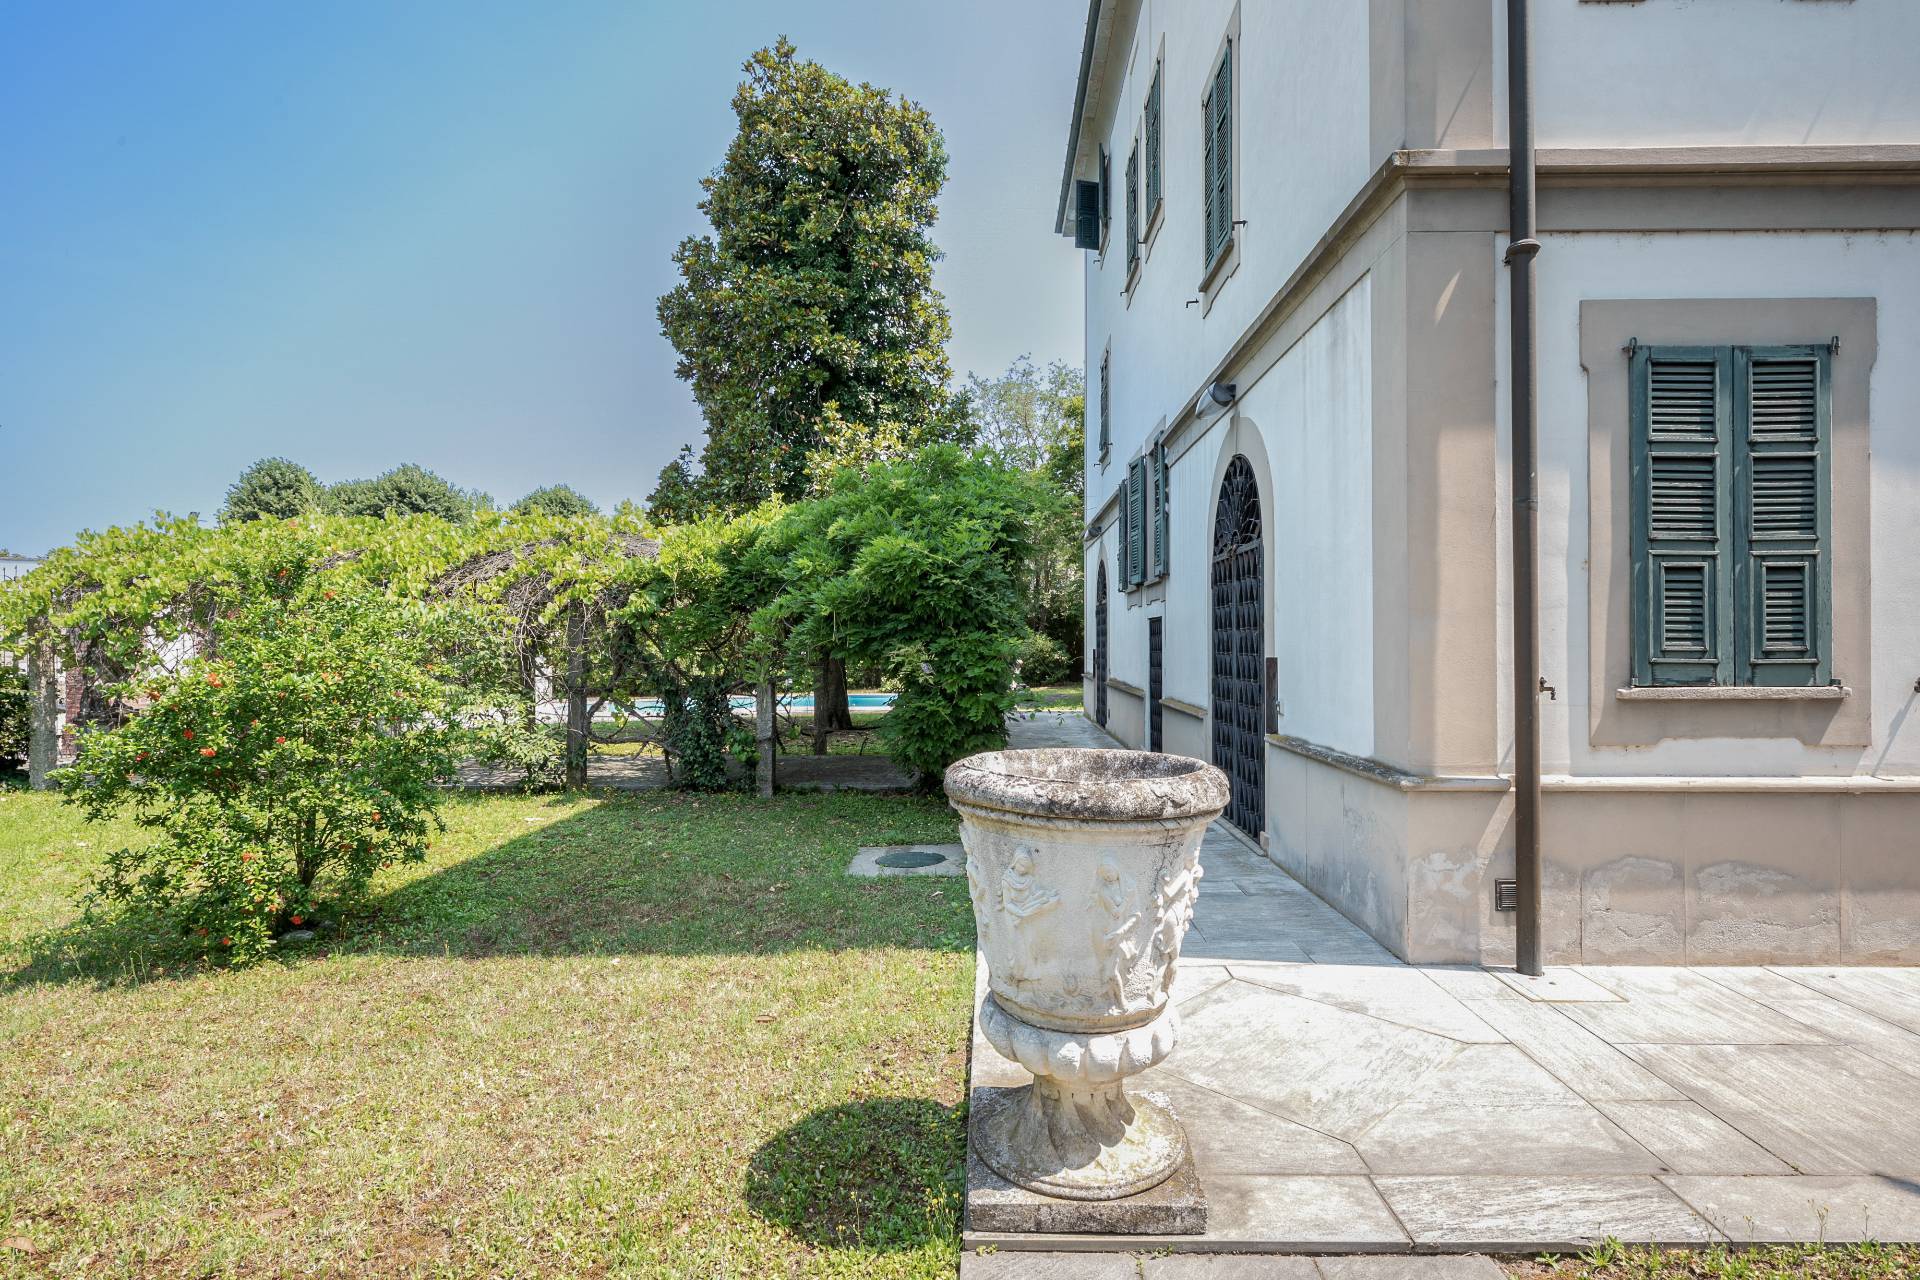 Villa in Vendita a Vigevano: 5 locali, 1000 mq - Foto 4